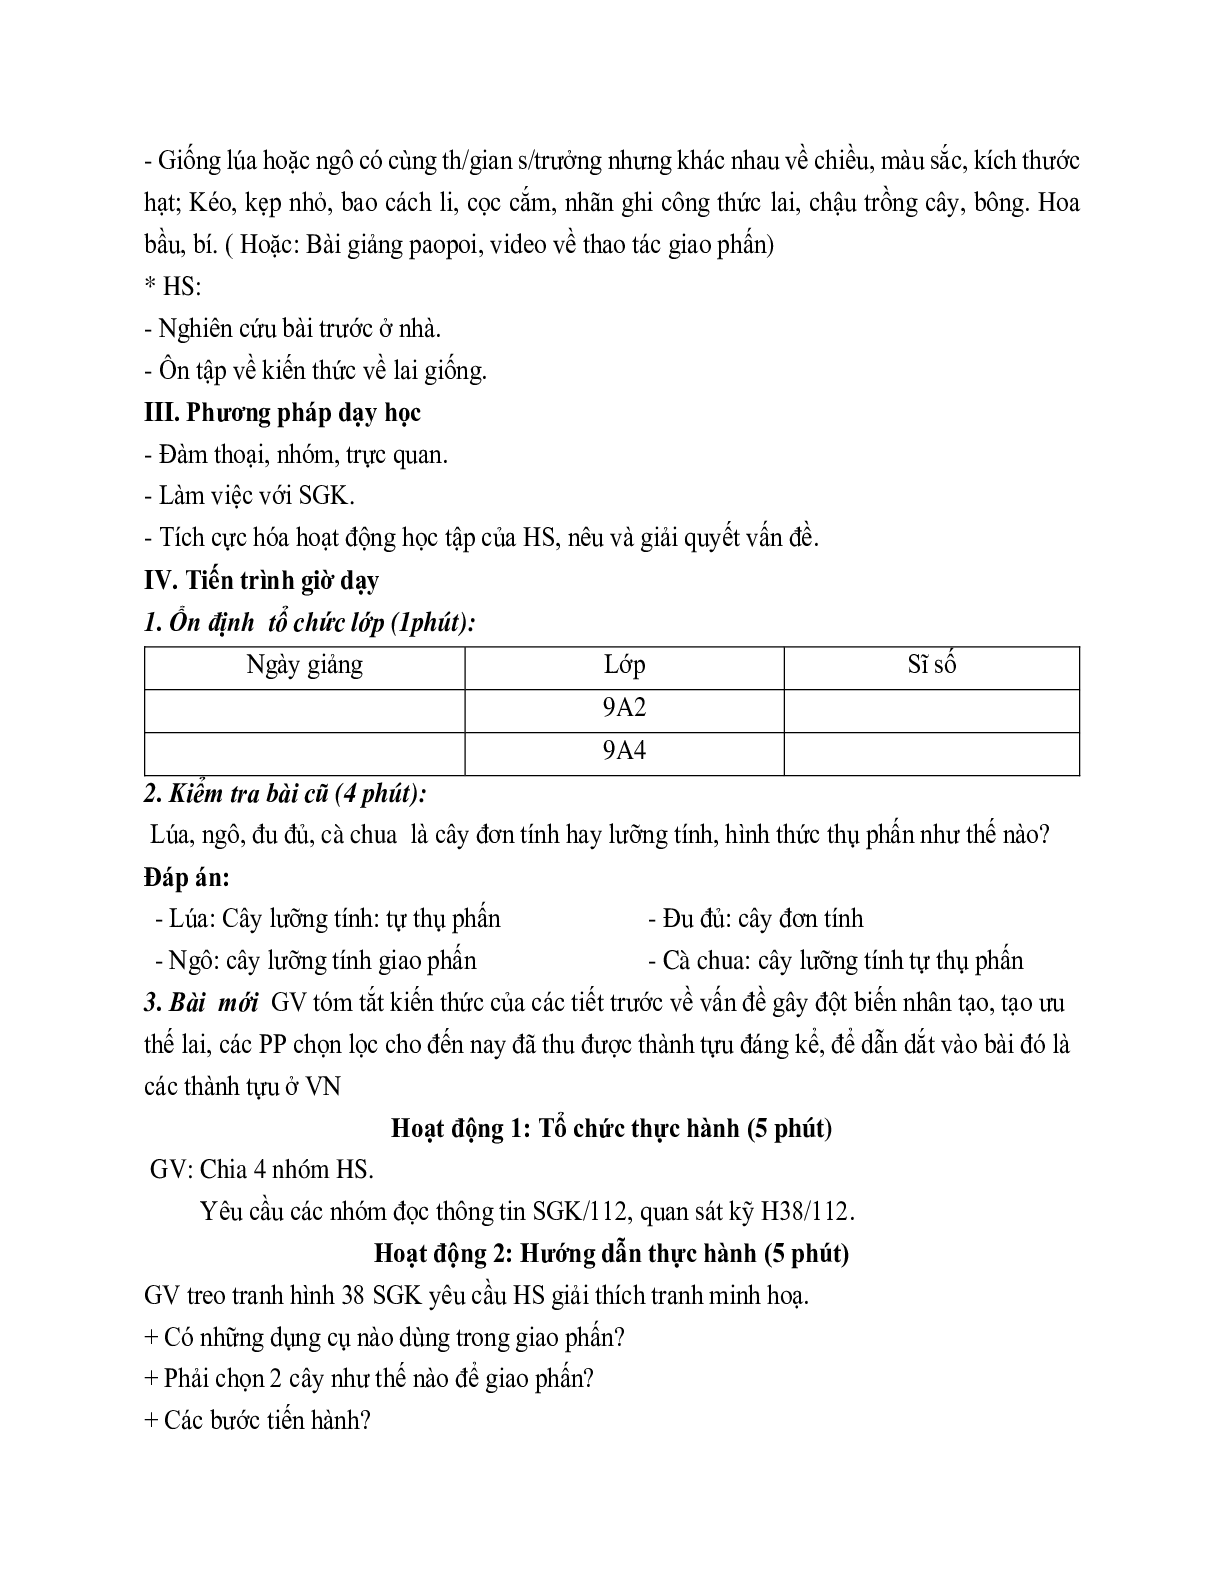 Giáo án Sinh học 9 Bài 38: Thực hành Tập dượt thao tác giao phấn mới nhất (trang 2)